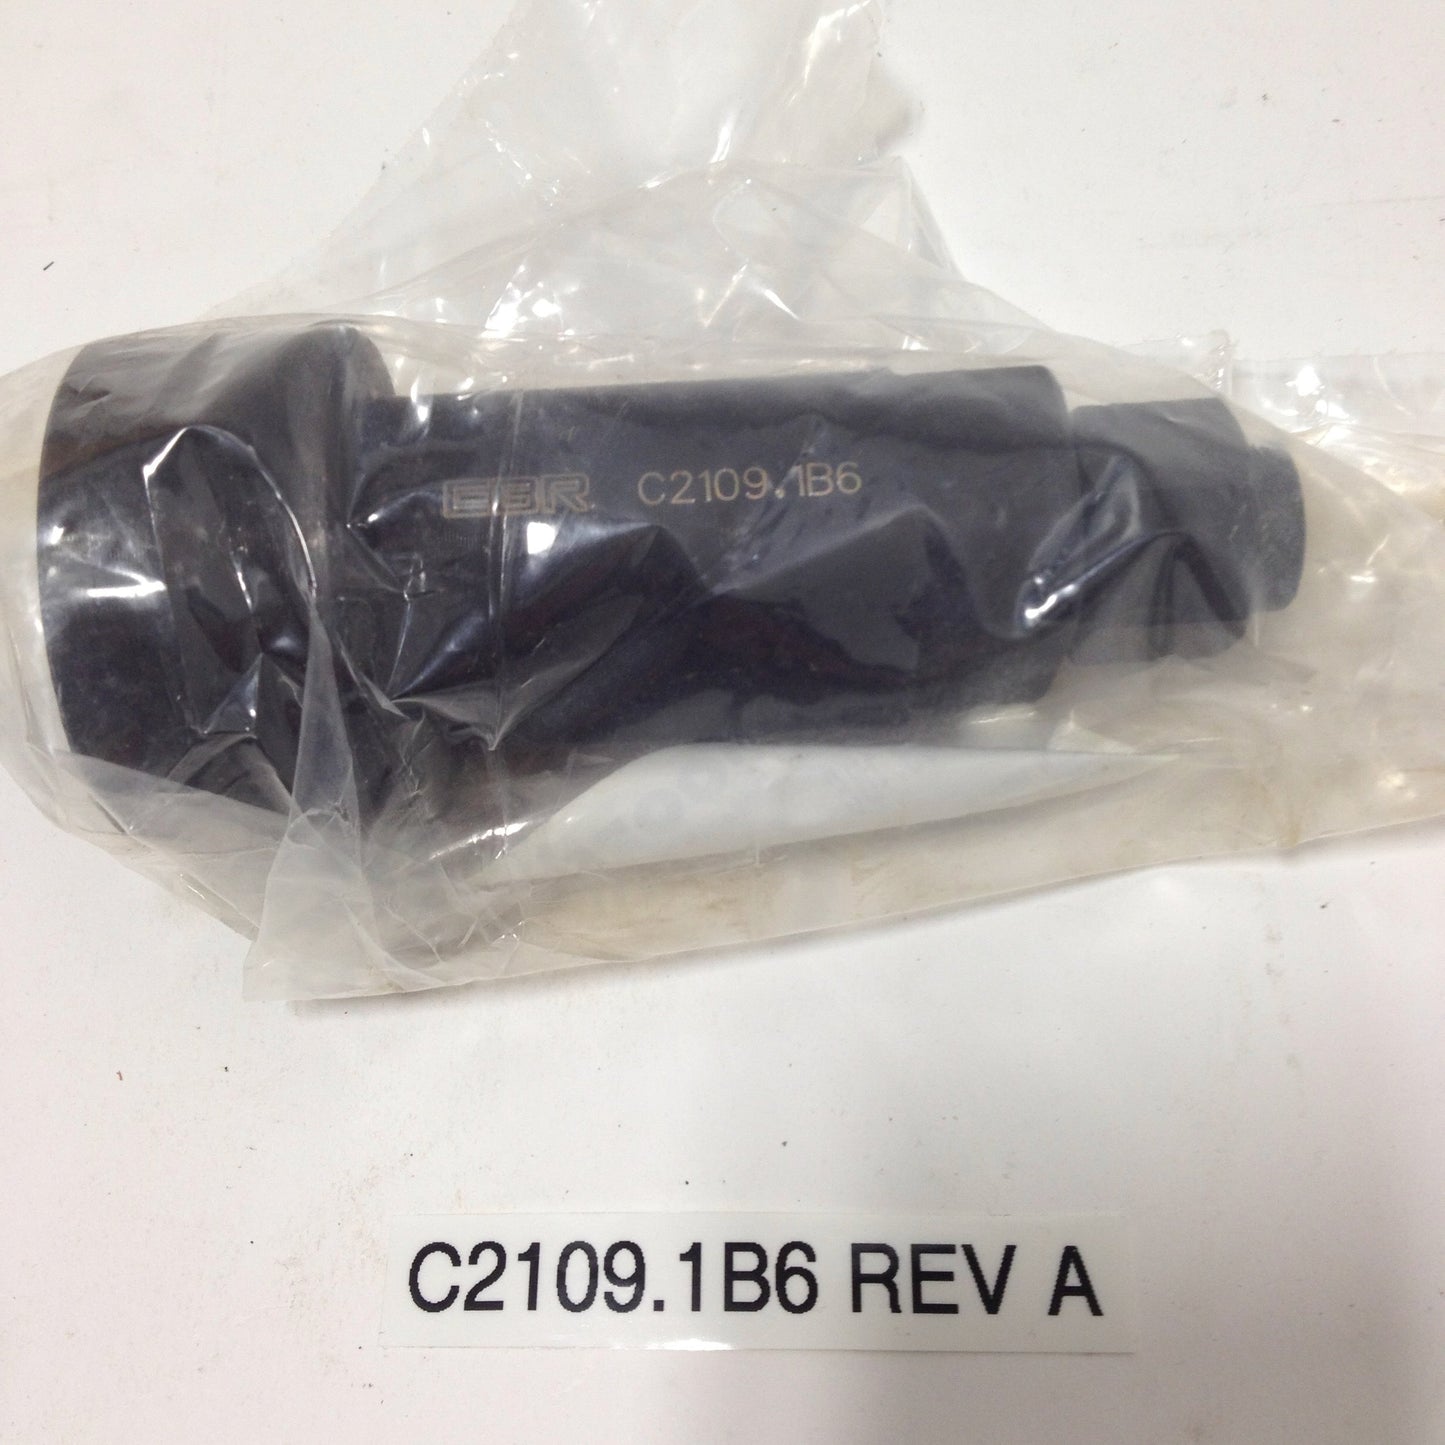 Alternator Rotor Shell Remover C2109.1B6 Rev A